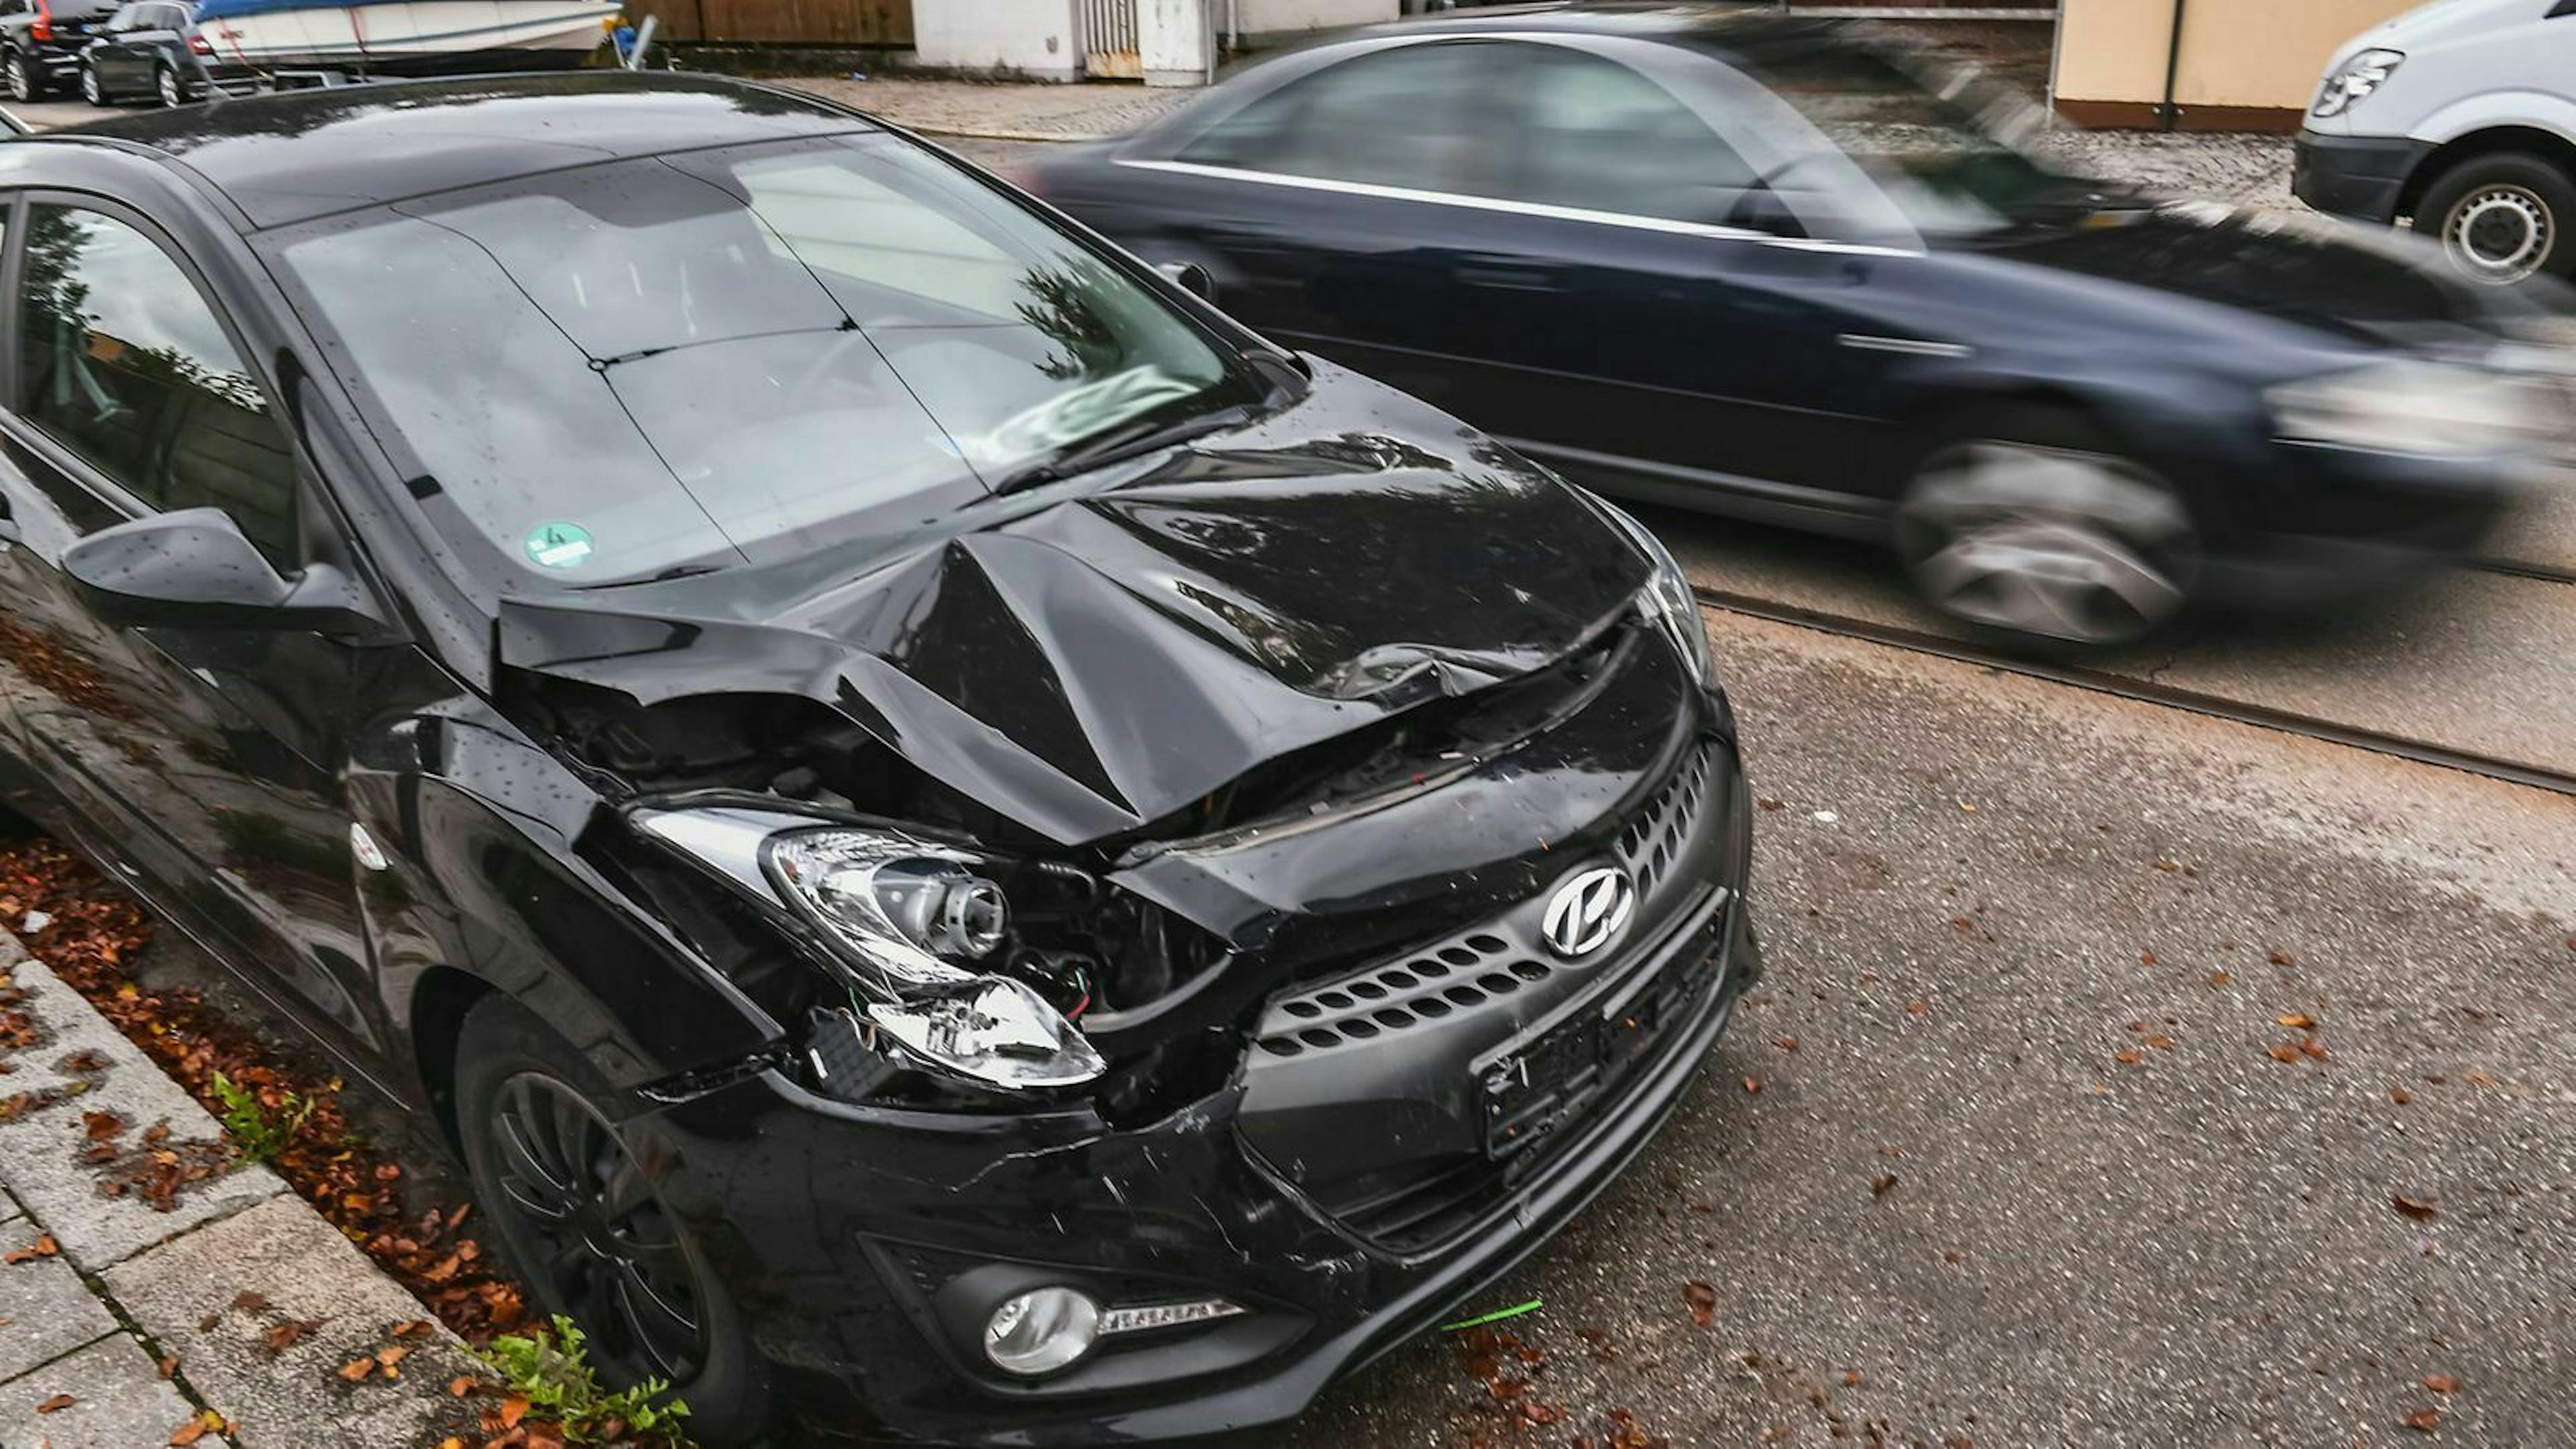 Ein Auto bremst grundlos vor Dir und provoziert einen Auffahrunfall? Dann handelt es sich womöglich um Versicherungsbetrug.